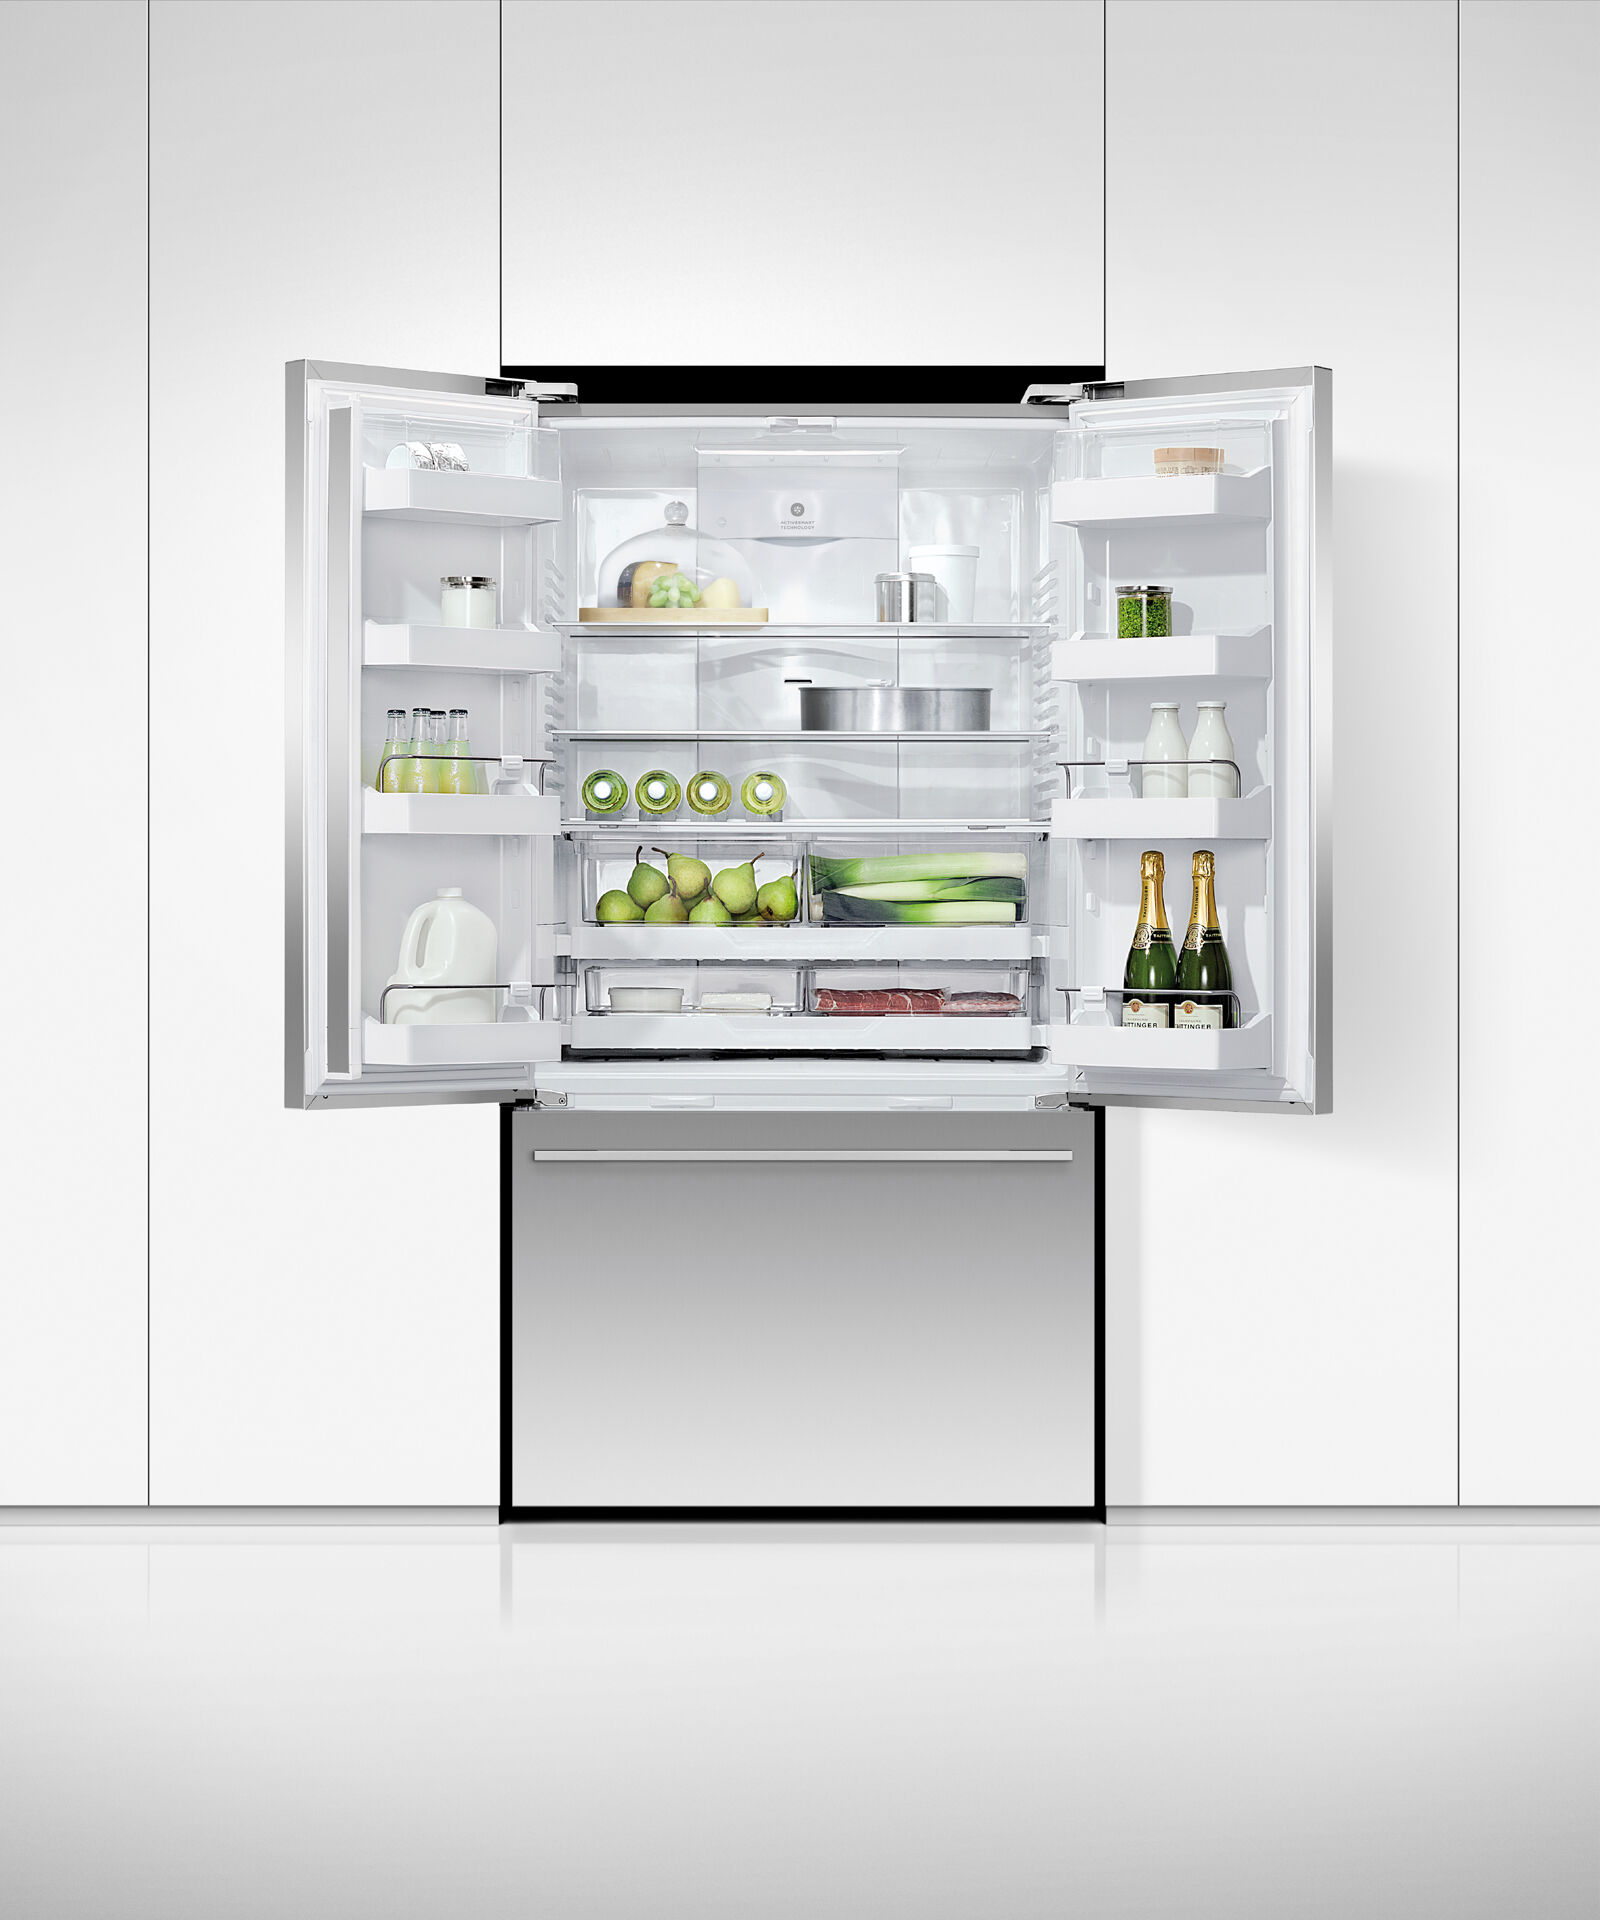 Freestanding French Door Refrigerator Freezer, 90cm gallery image 4.0